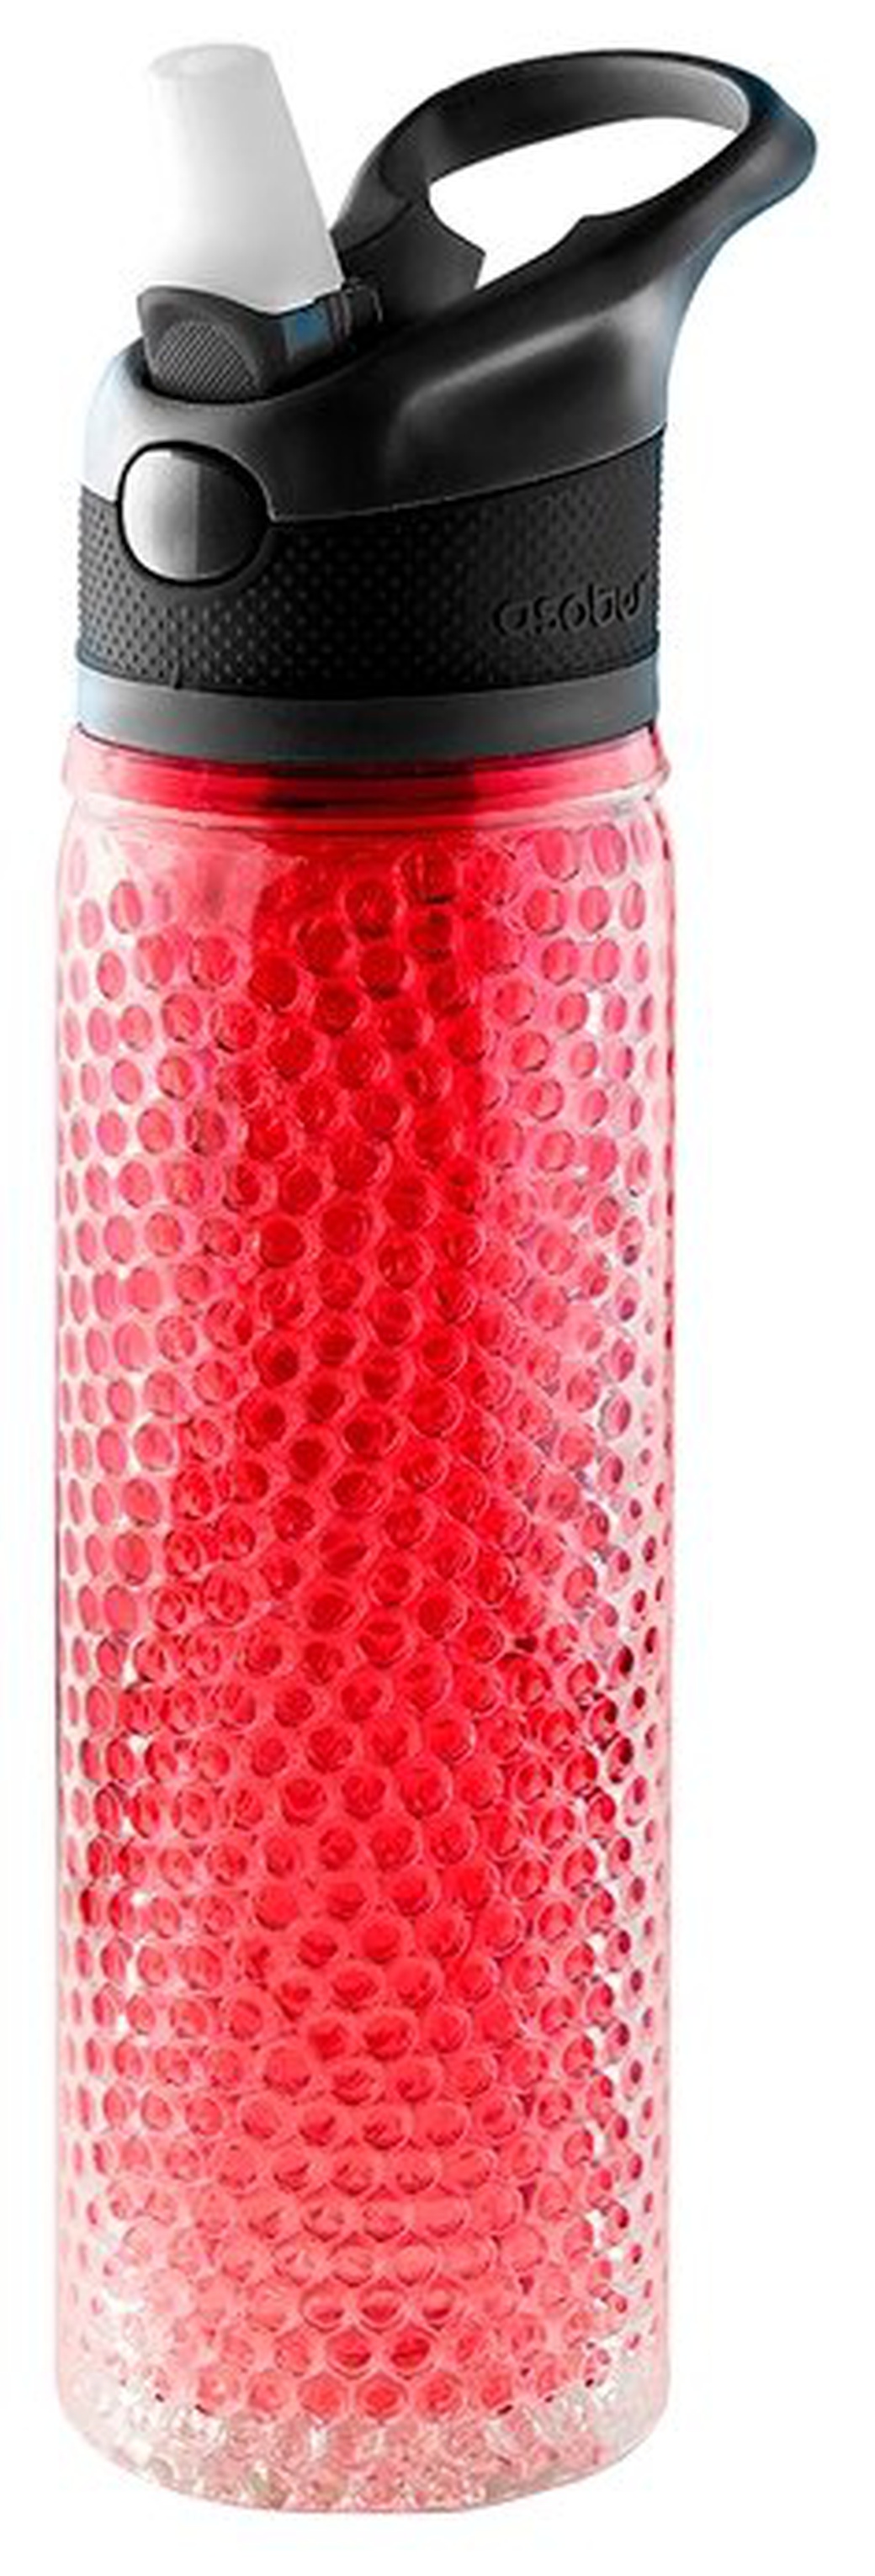 Термобутылка Asobu Deep freeze (0,6 литра), красная, шт фото